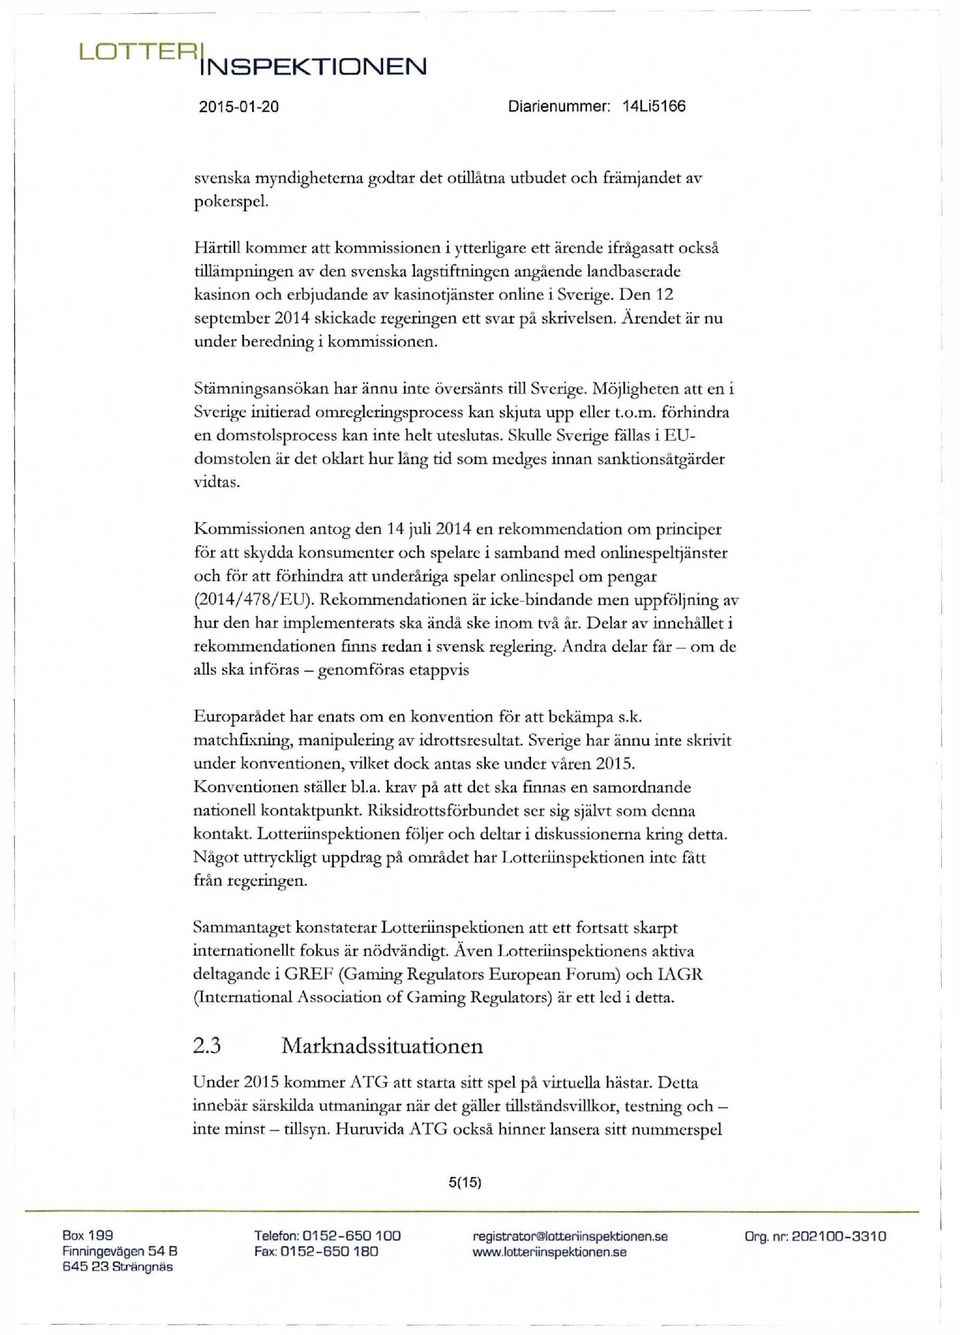 Den 12 september 2014 skickade regeringen ett svar på skrivelsen. Ärendet är nu under beredning i kommissionen. Stämningsansökan har ännu inte översänts till Sverige.